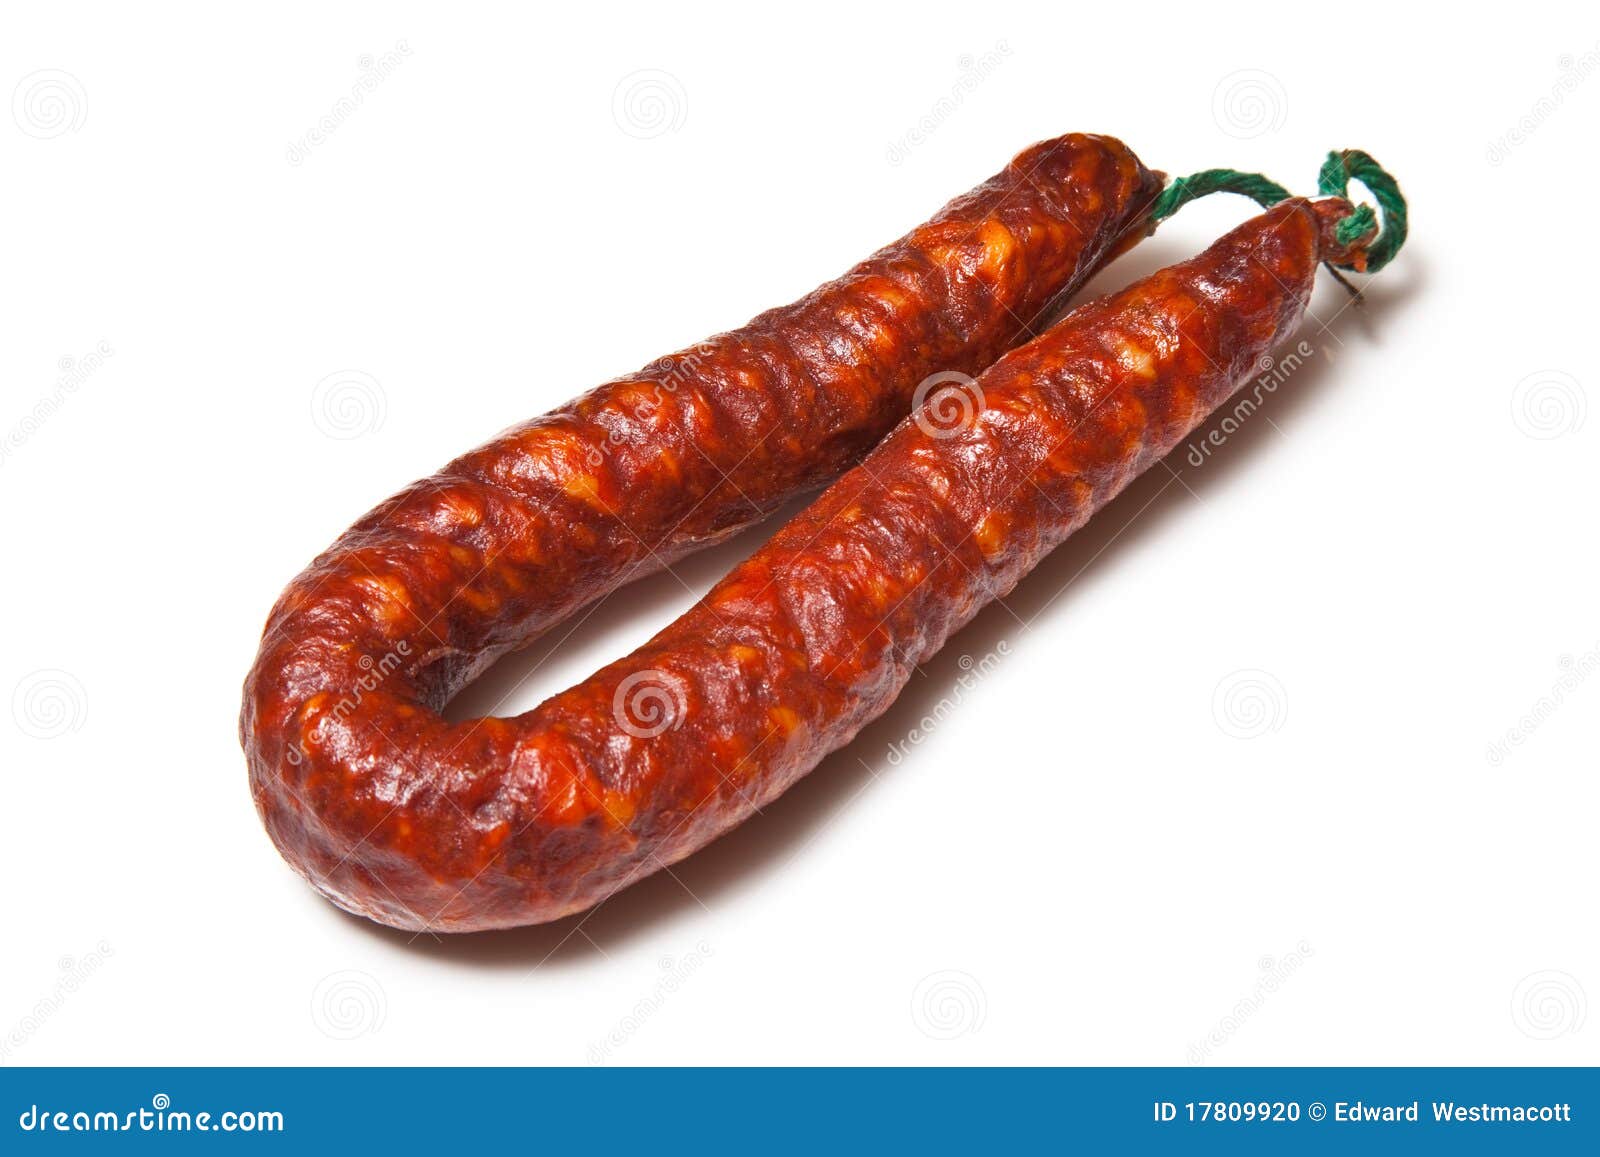 iberian chorizo sausage